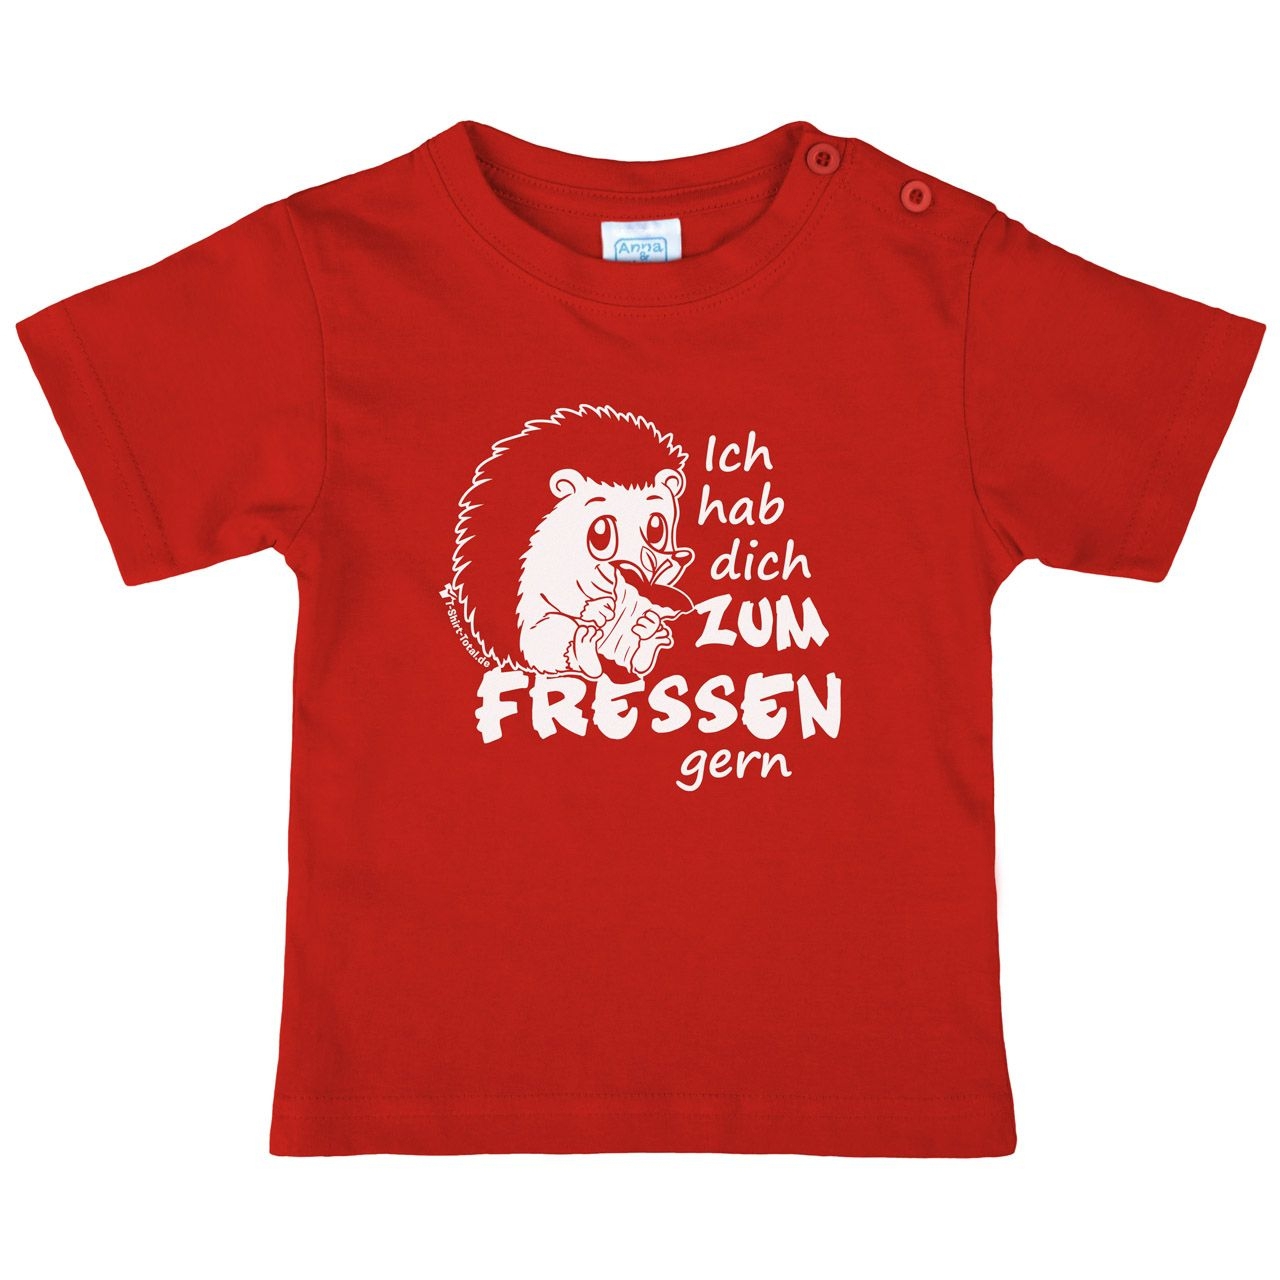 Zum fressen gern Kinder T-Shirt rot 80 / 86